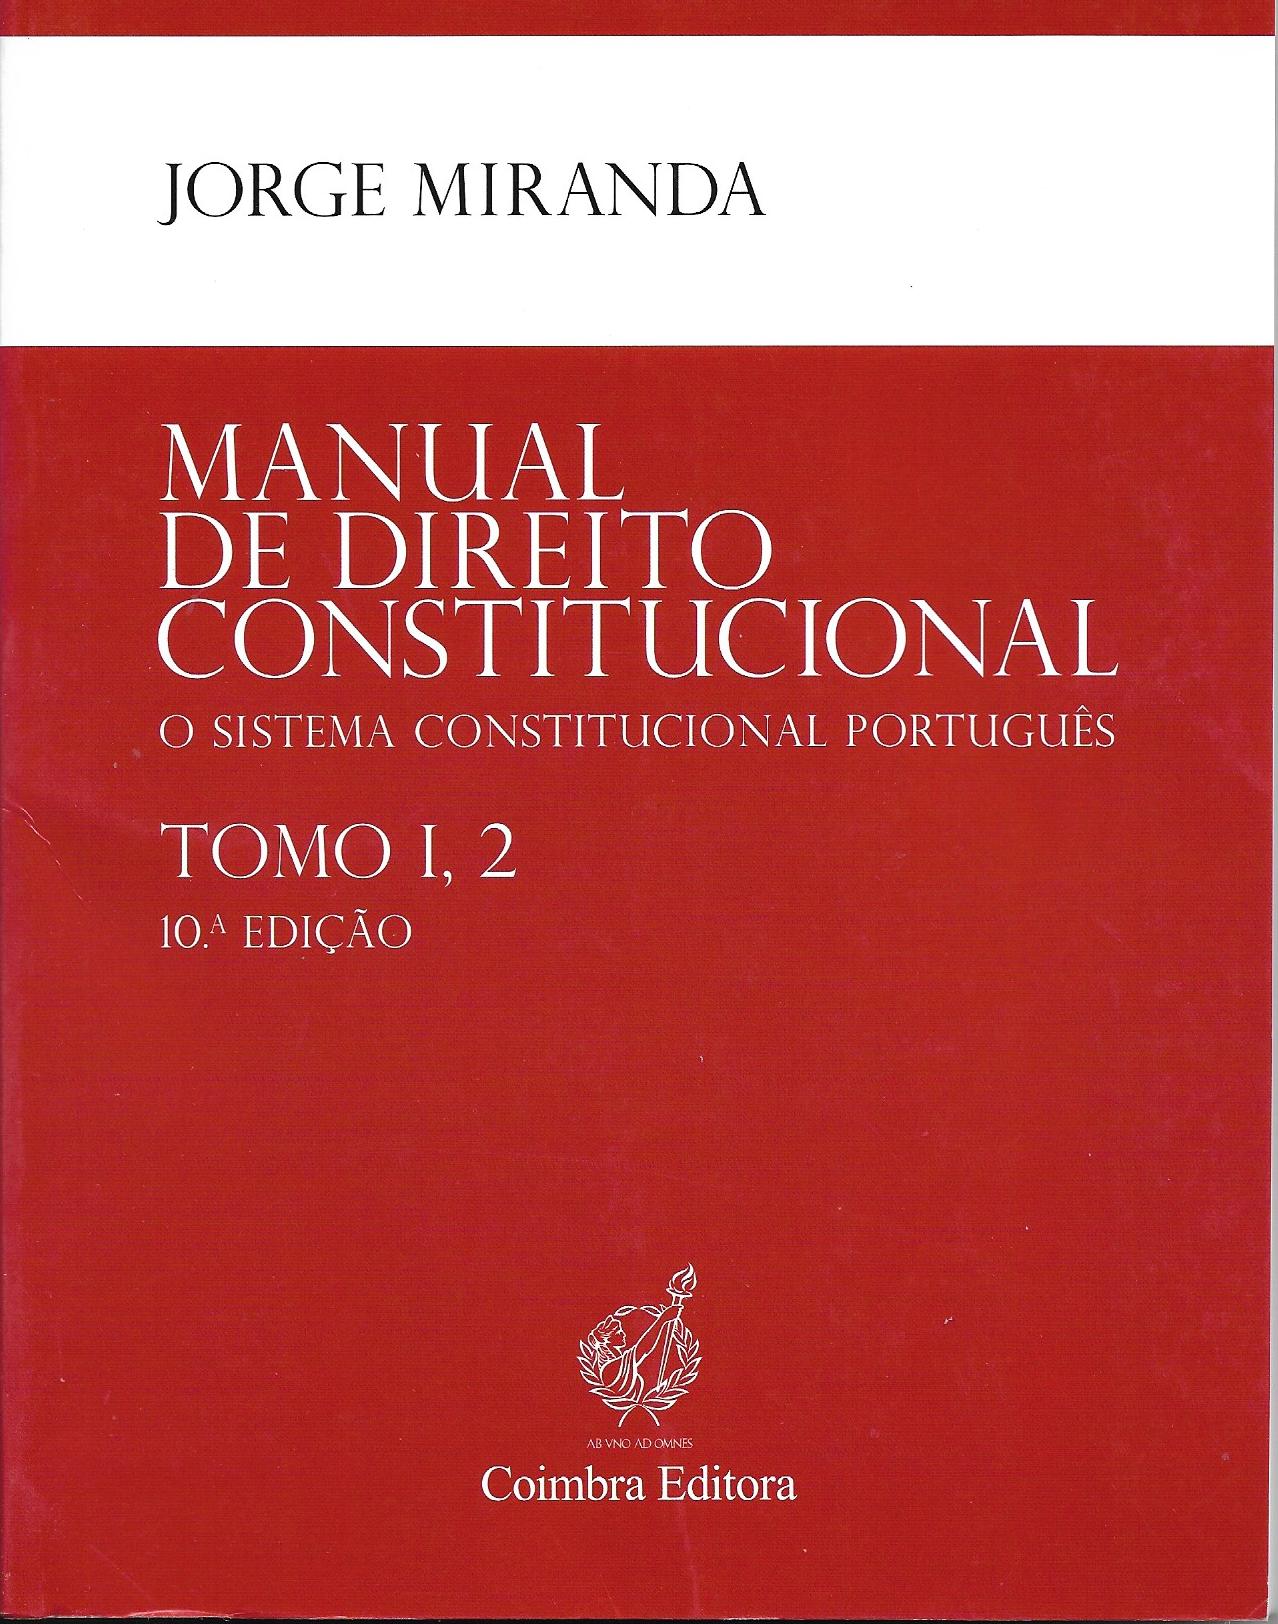 Manual de Direito Constitucional - TOMO I, 2